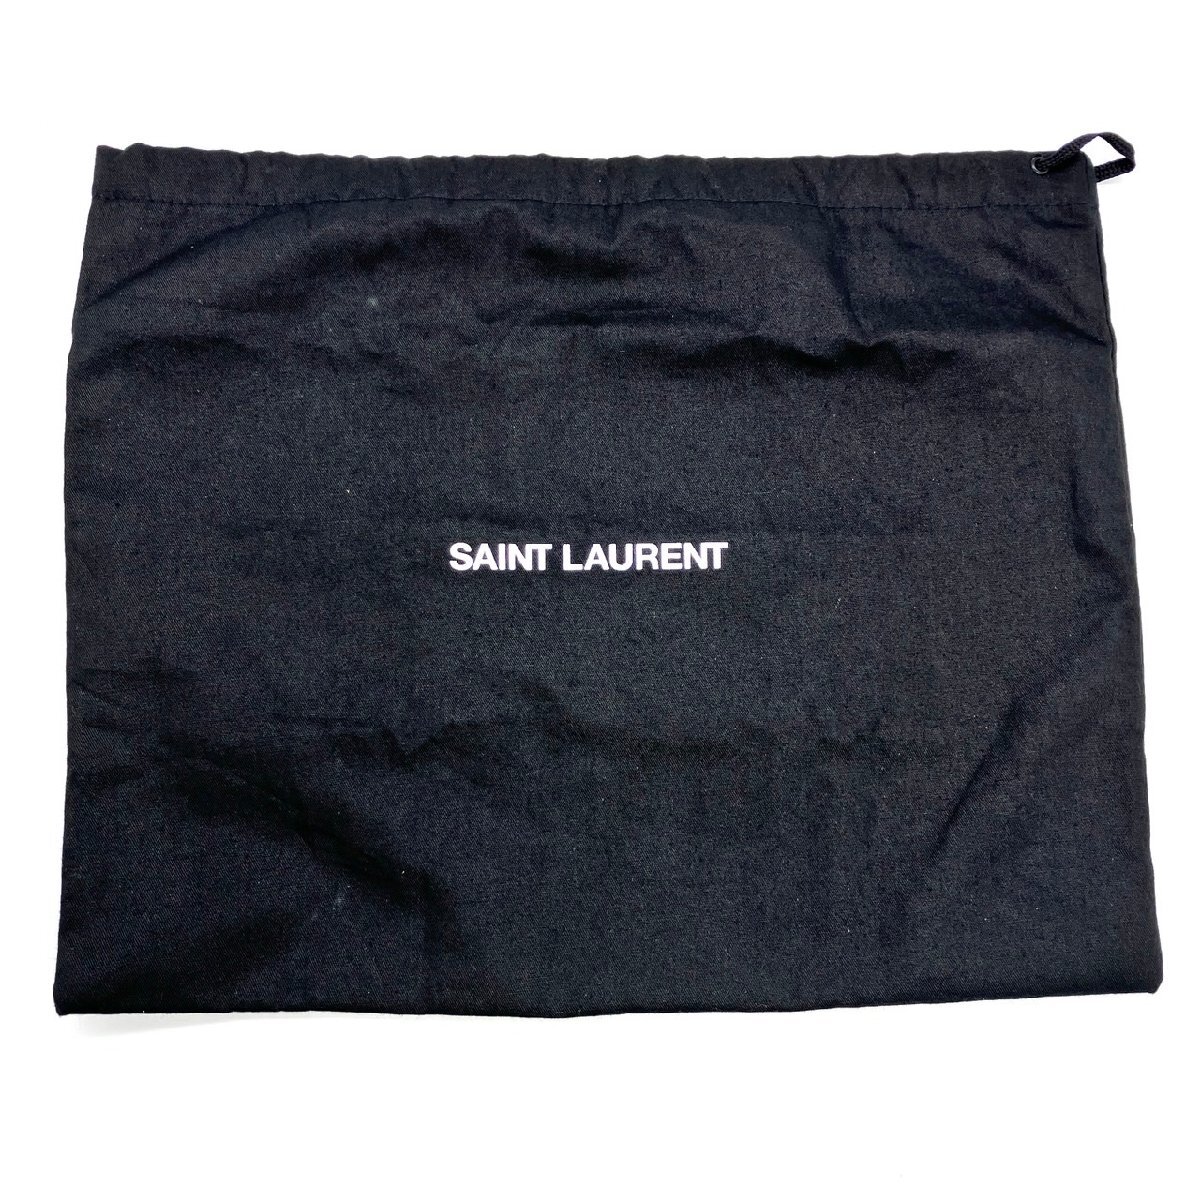  Yves Saint-Laurent YVES SAINT LAURENT сумка на плечо YSL Logo темно-синий Gold металлические принадлежности наклонный .. сумка портфель женский сумка 6-3-898